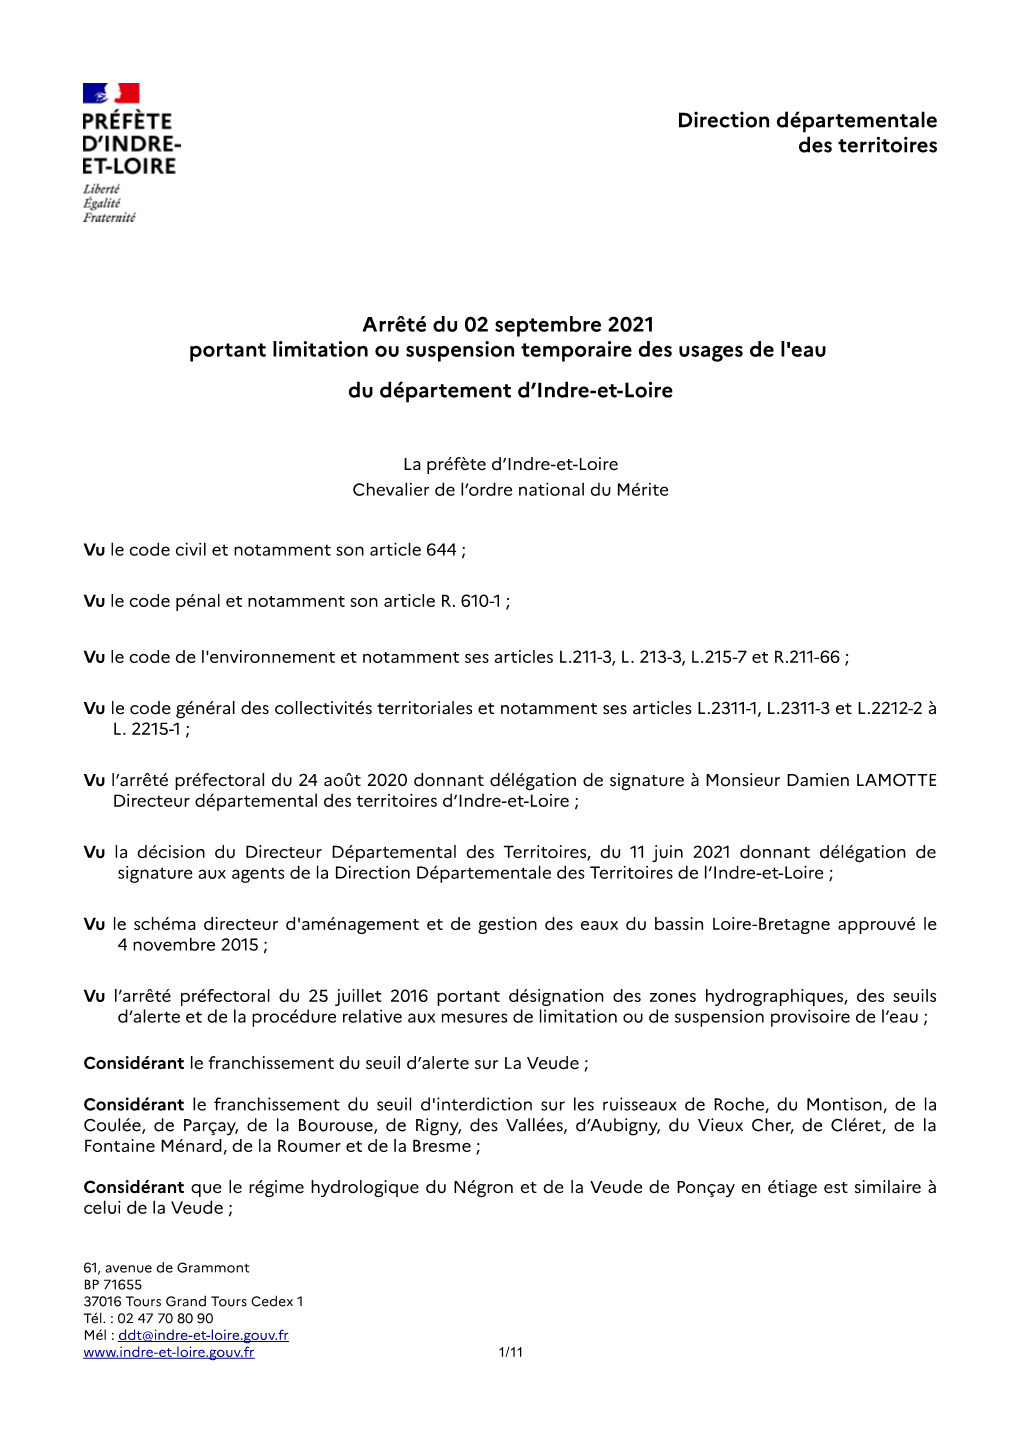 Arrêté Du 02 Septembre 2021 Portant Limitation Ou Suspension Temporaire Des Usages De L'eau Du Département D'indre-Et-Loire